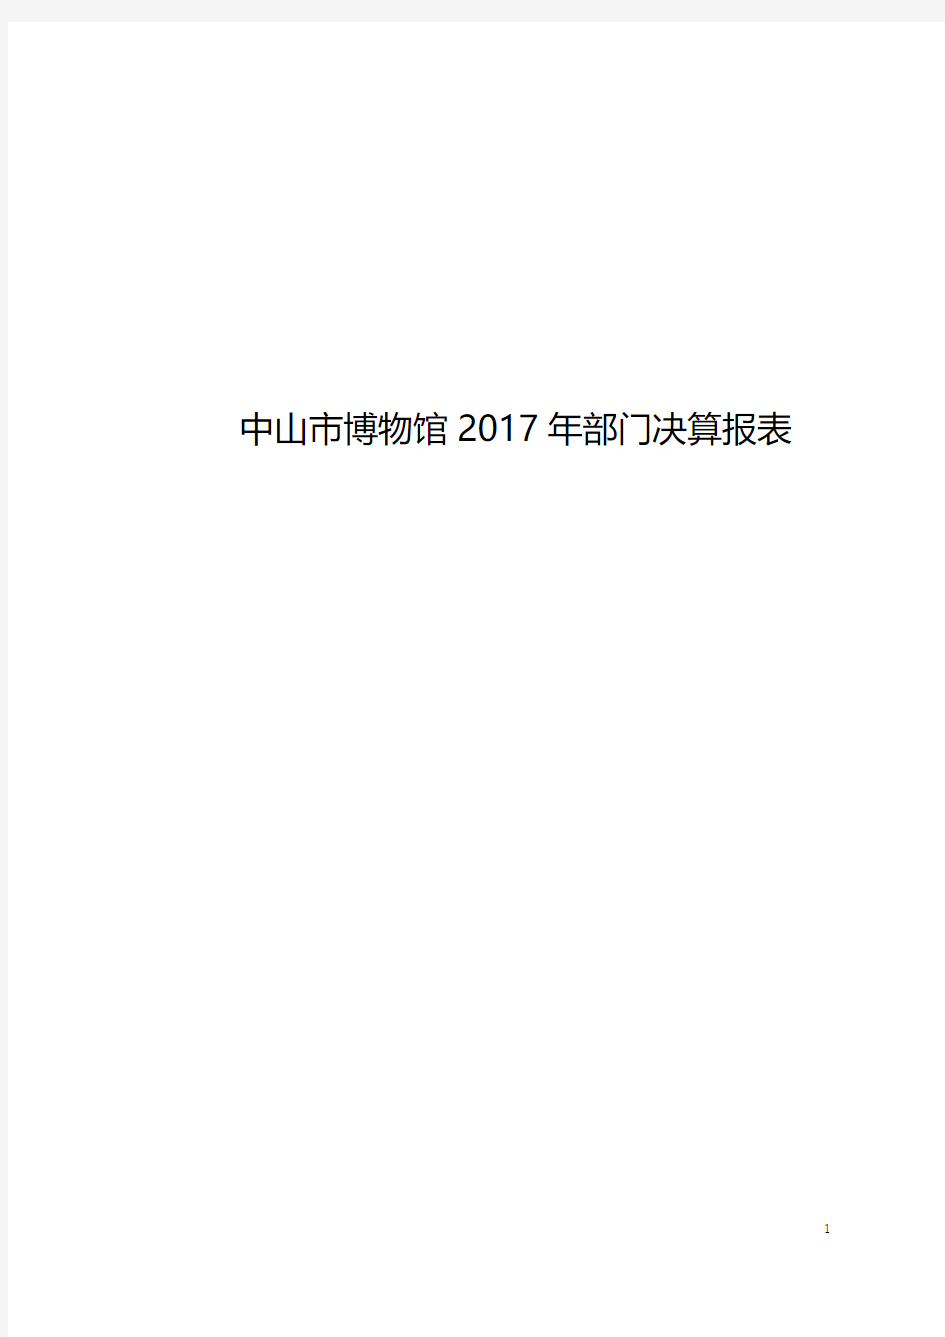 中山市博物馆2017年部门决算报表